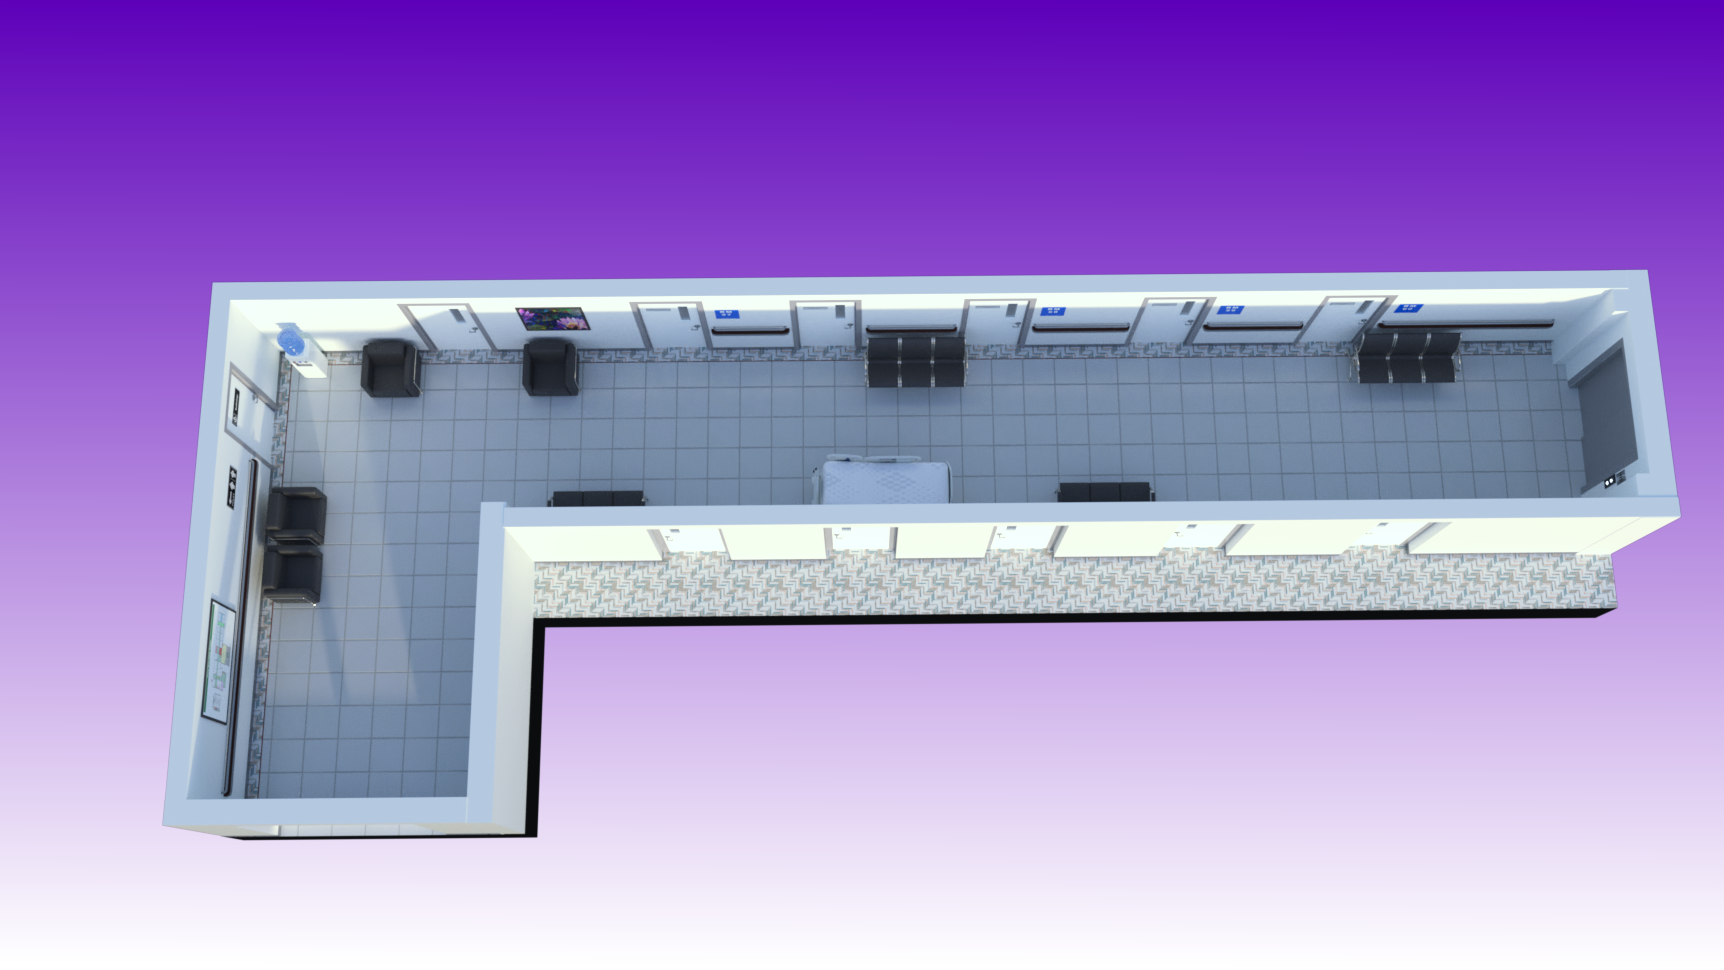 Hospital Hallway by: Digitallab3D, 3D Models by Daz 3D